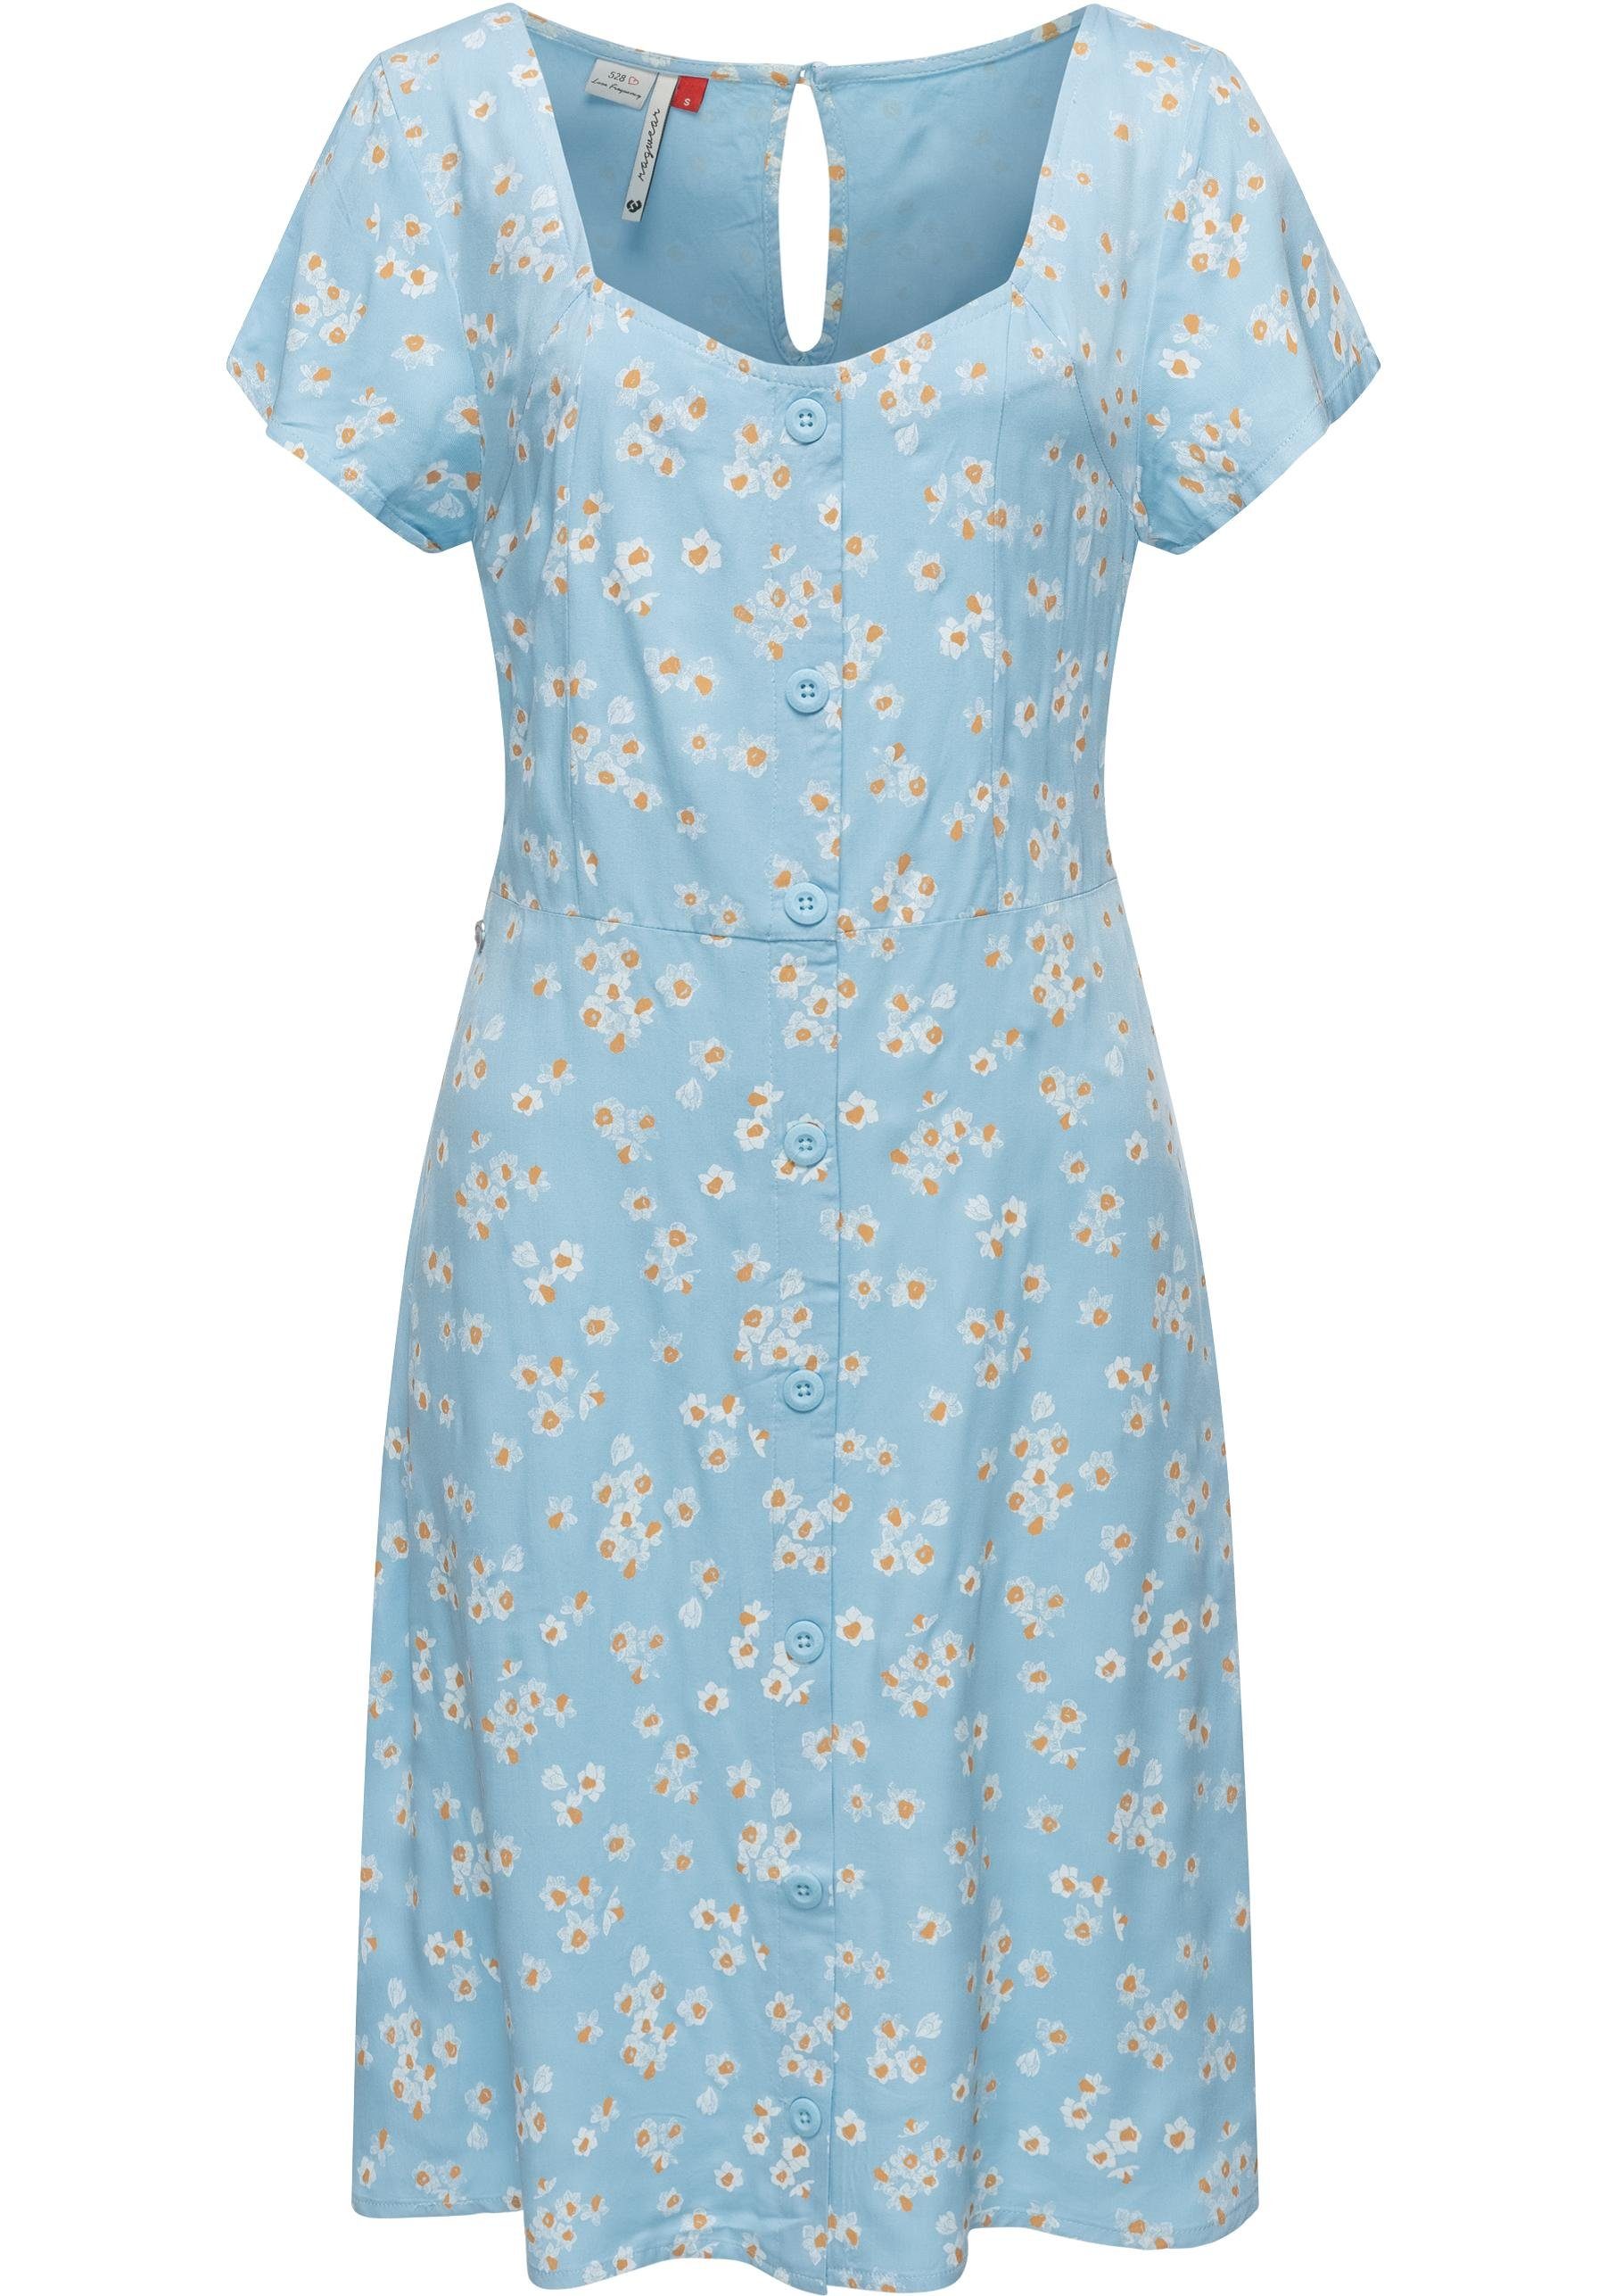 Ragwear Blusenkleid Anerley stylisches Sommerkleid mit Allover Print hellblau